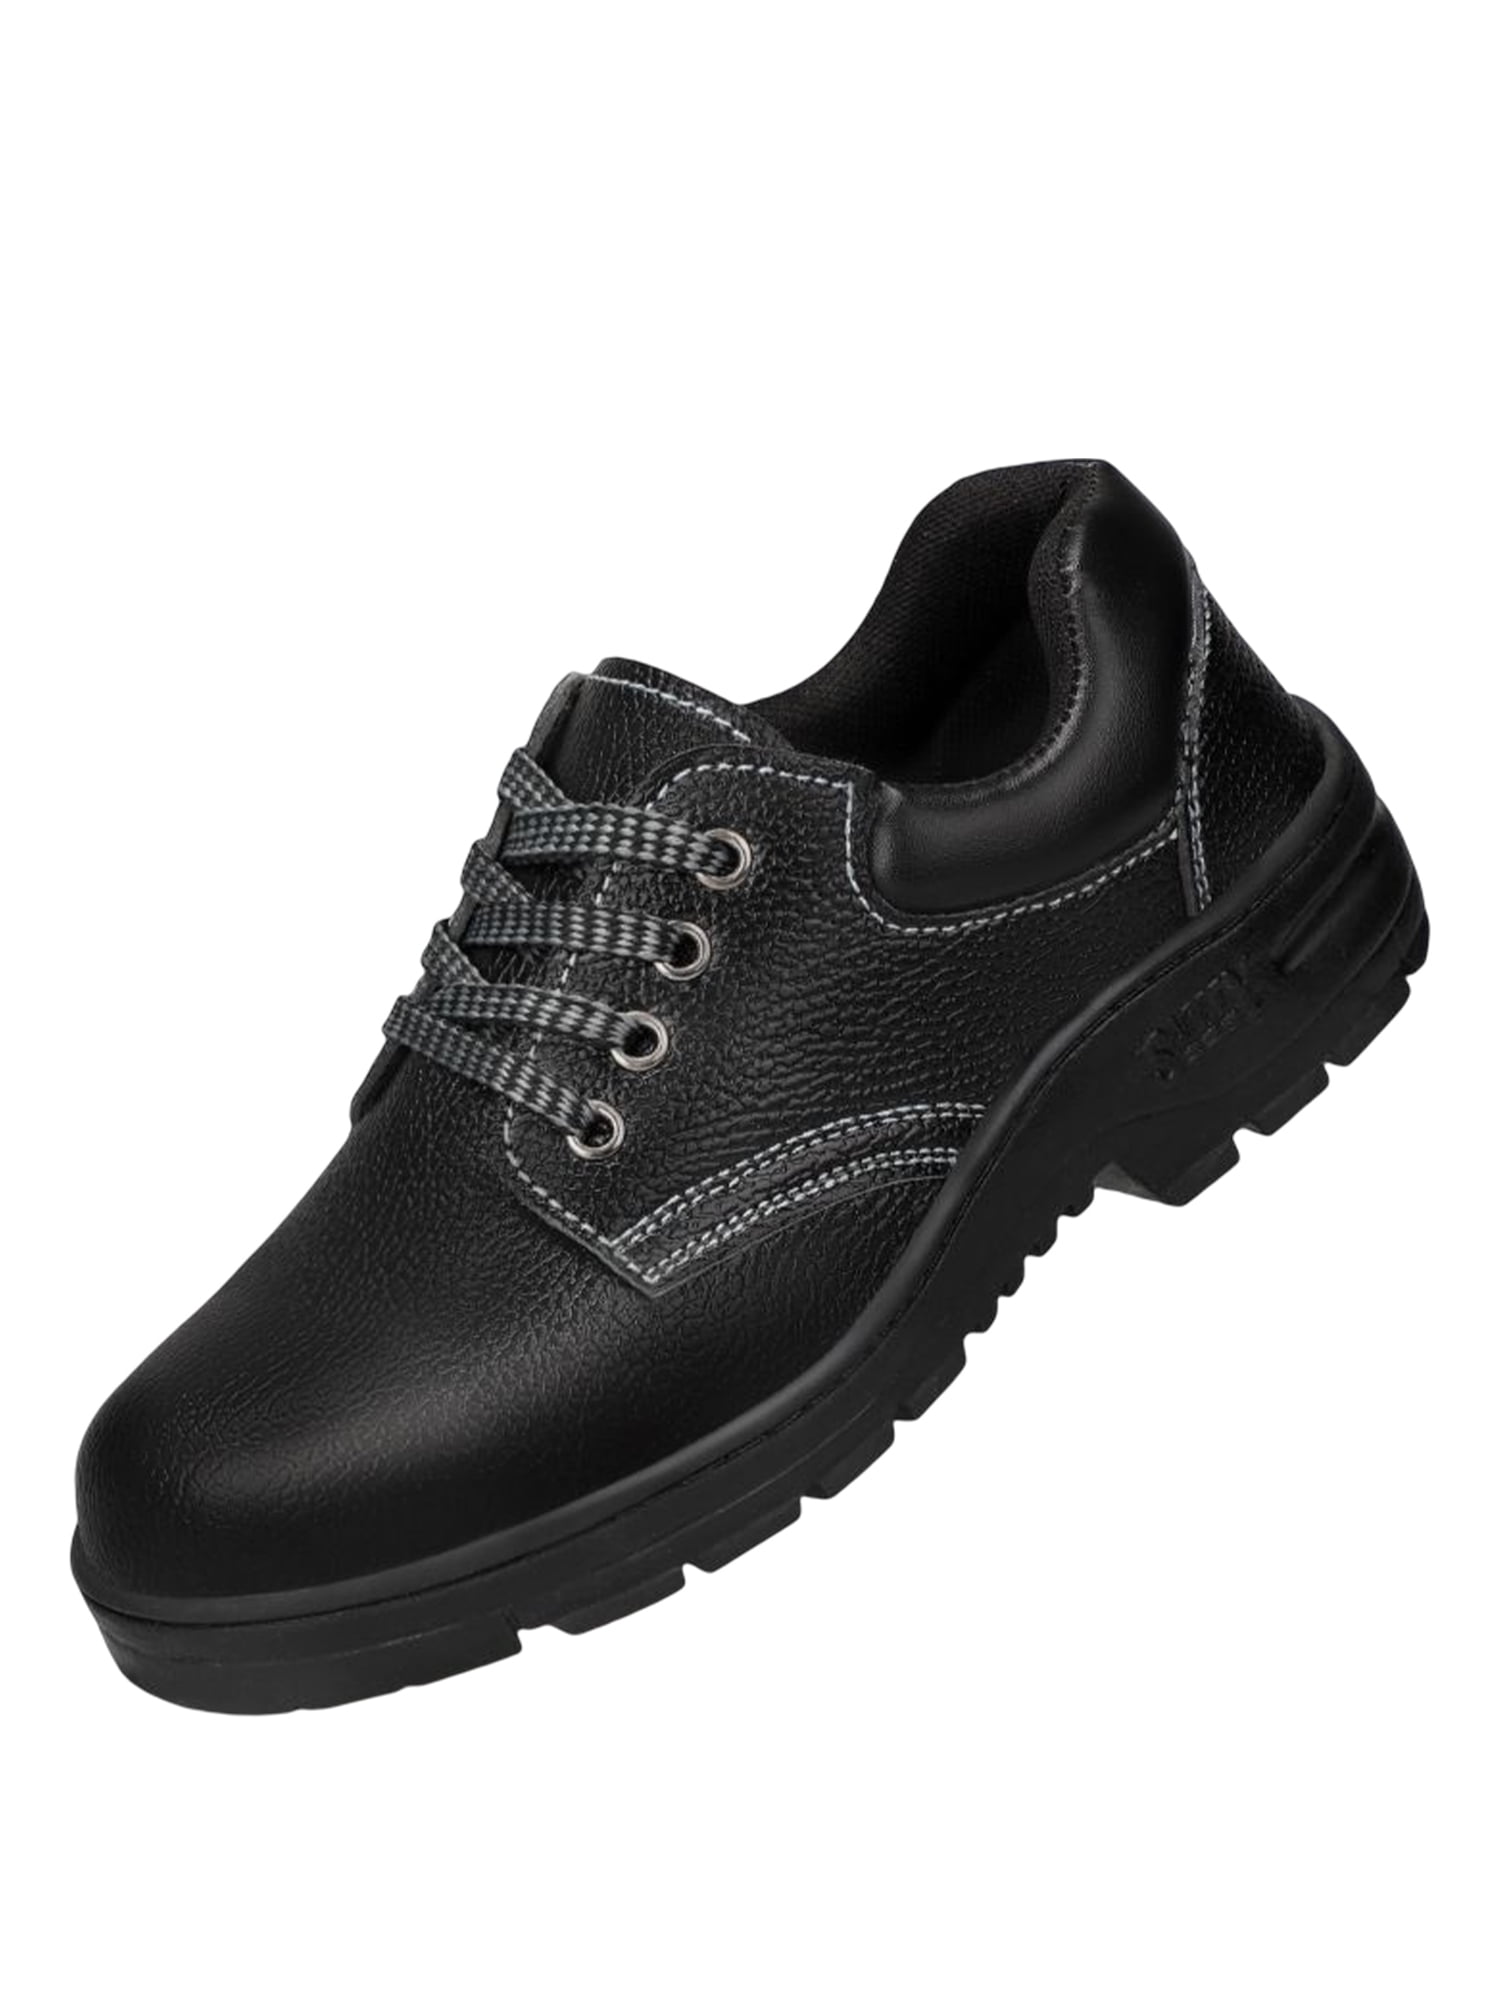 SIMANLAN Unisex Work Sneaker Air Cushion Safety Shoe Steel Toe Sneakers ...